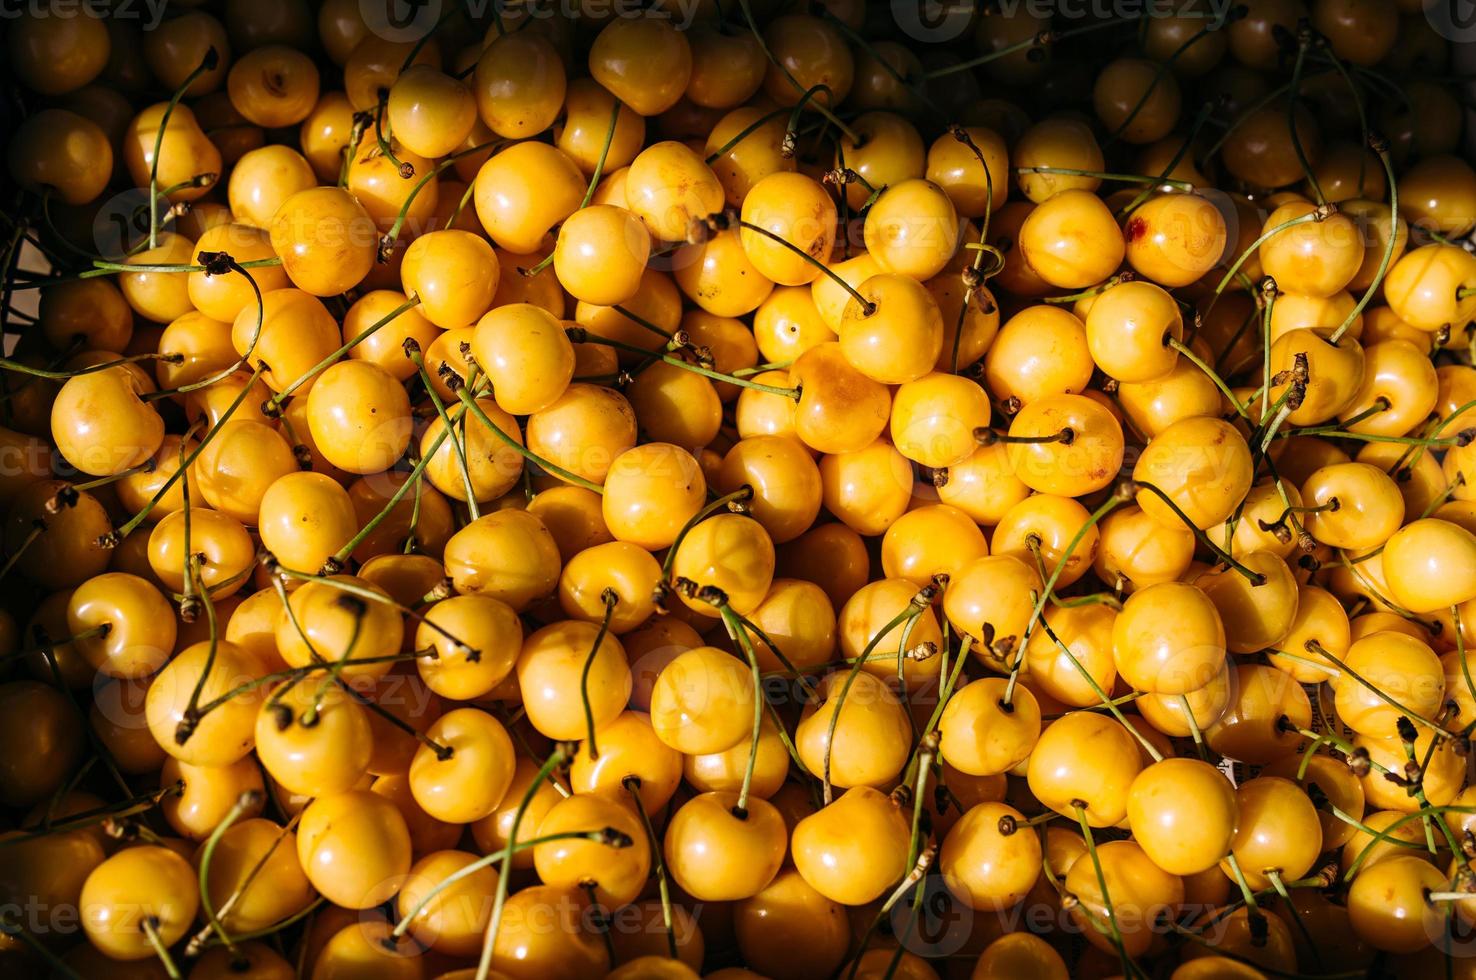 cerises jaunes fraîches sur un étal du marché fermier photo